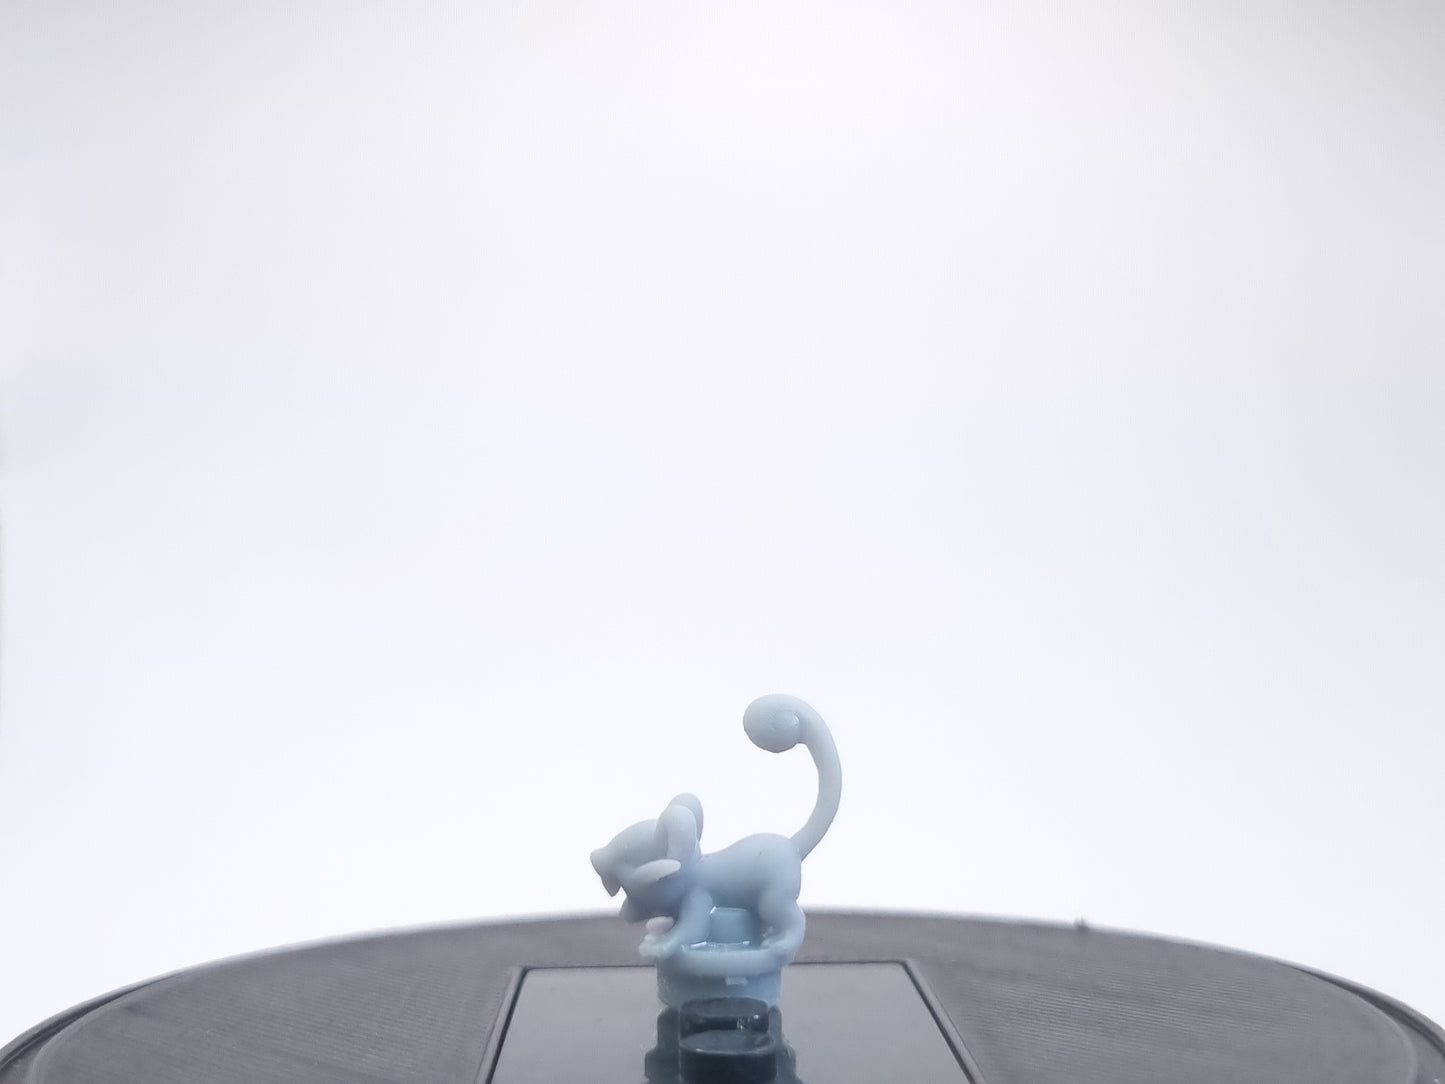 lego compatible 3D printed tiny rat creature!